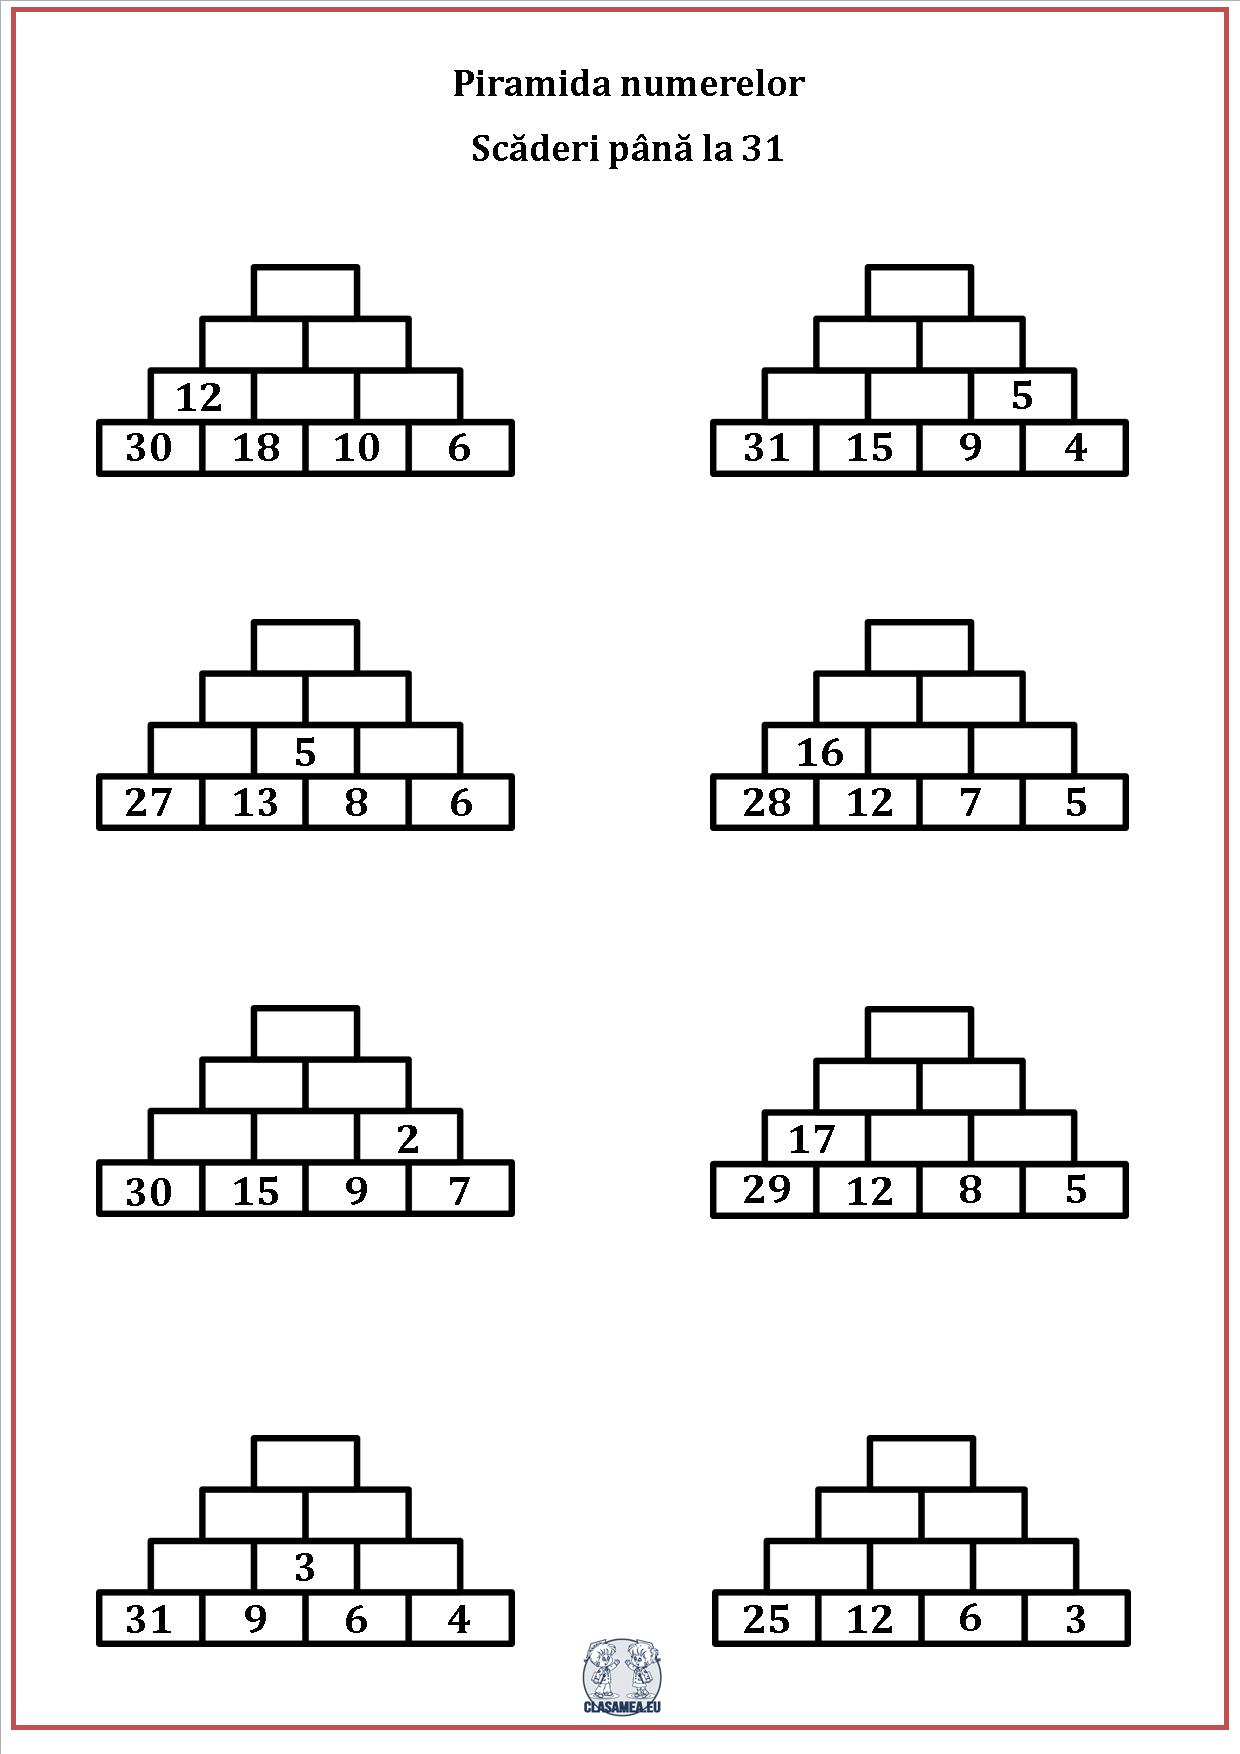 Piramida numerelor - Scăderea numerelor până la 31